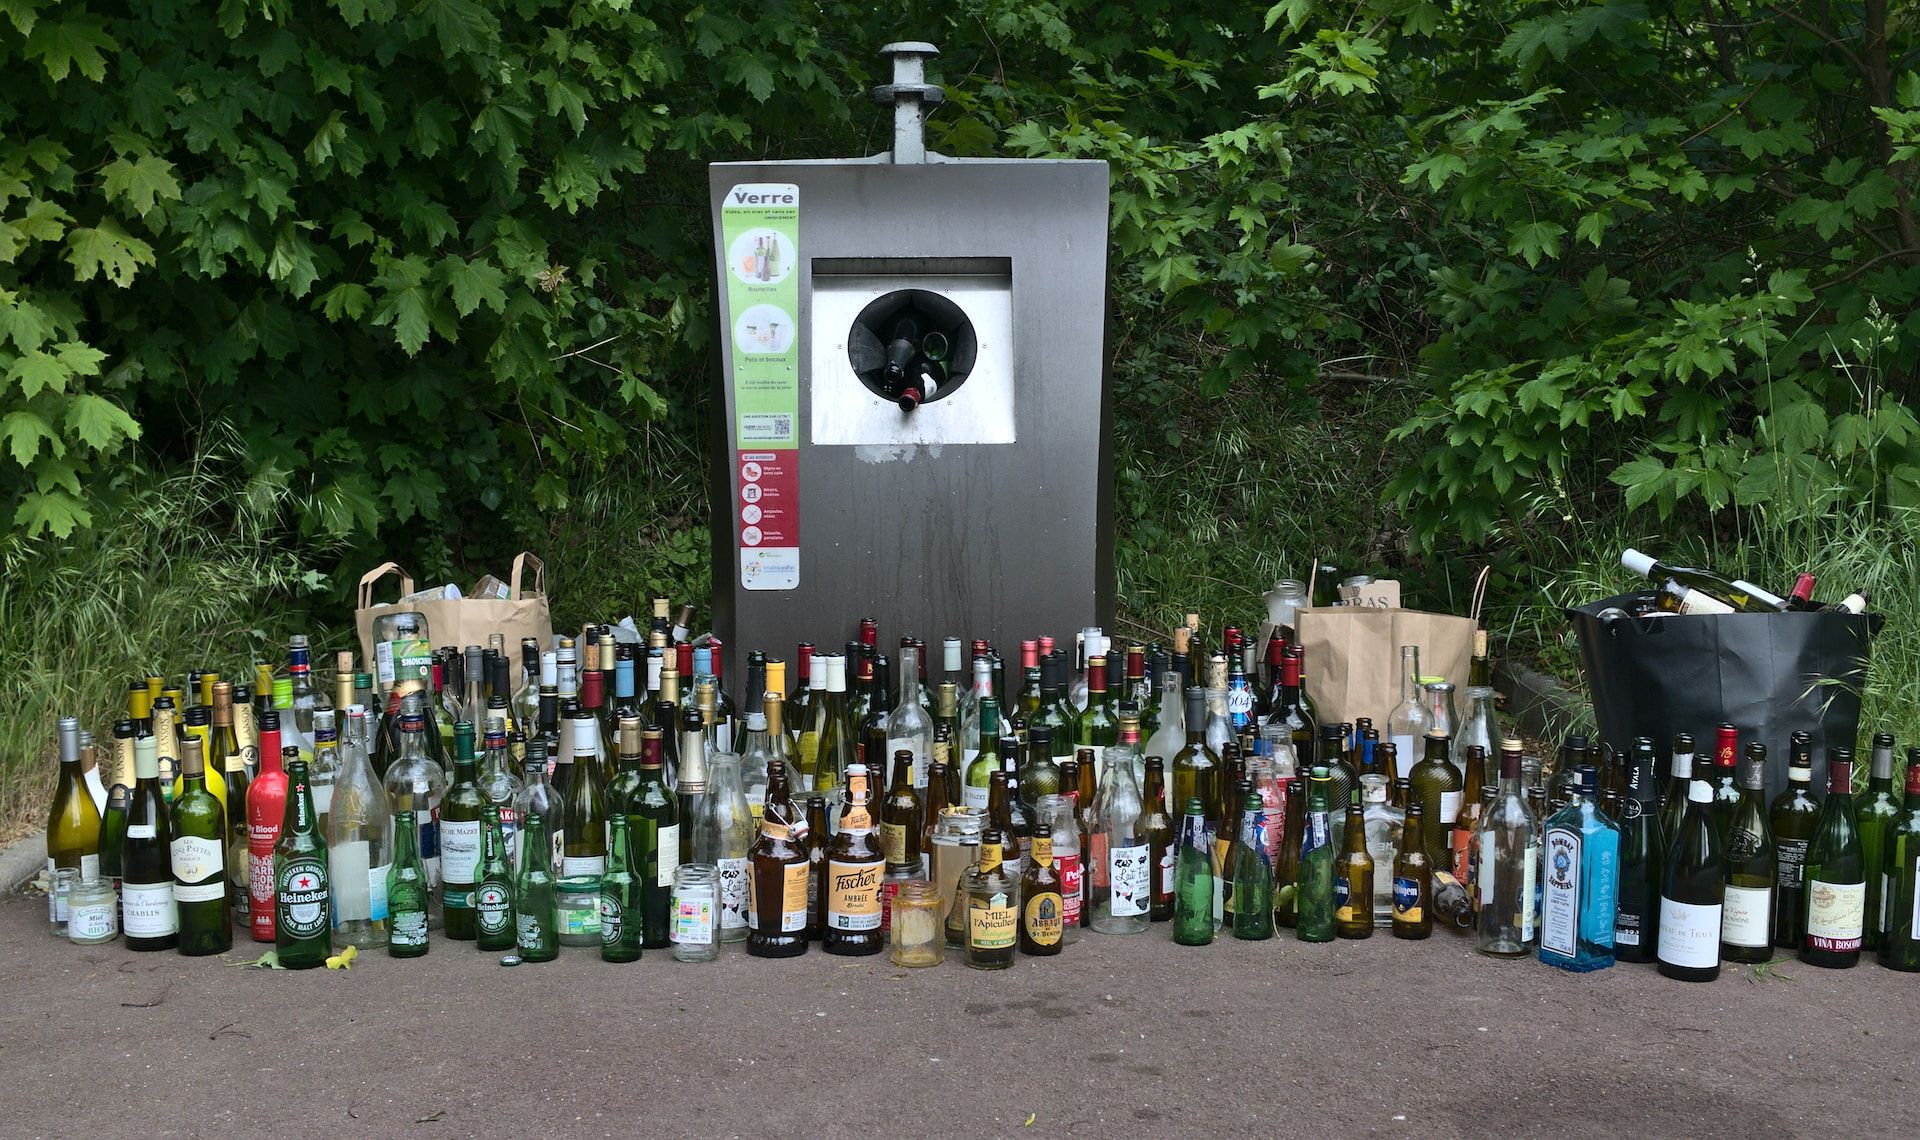 une poubelle de verre débordant de bouteilles d'alcool - Photo by Aleksandr Kadykov on https://unsplash.com/fr/photos/h8aQ4PUViCA